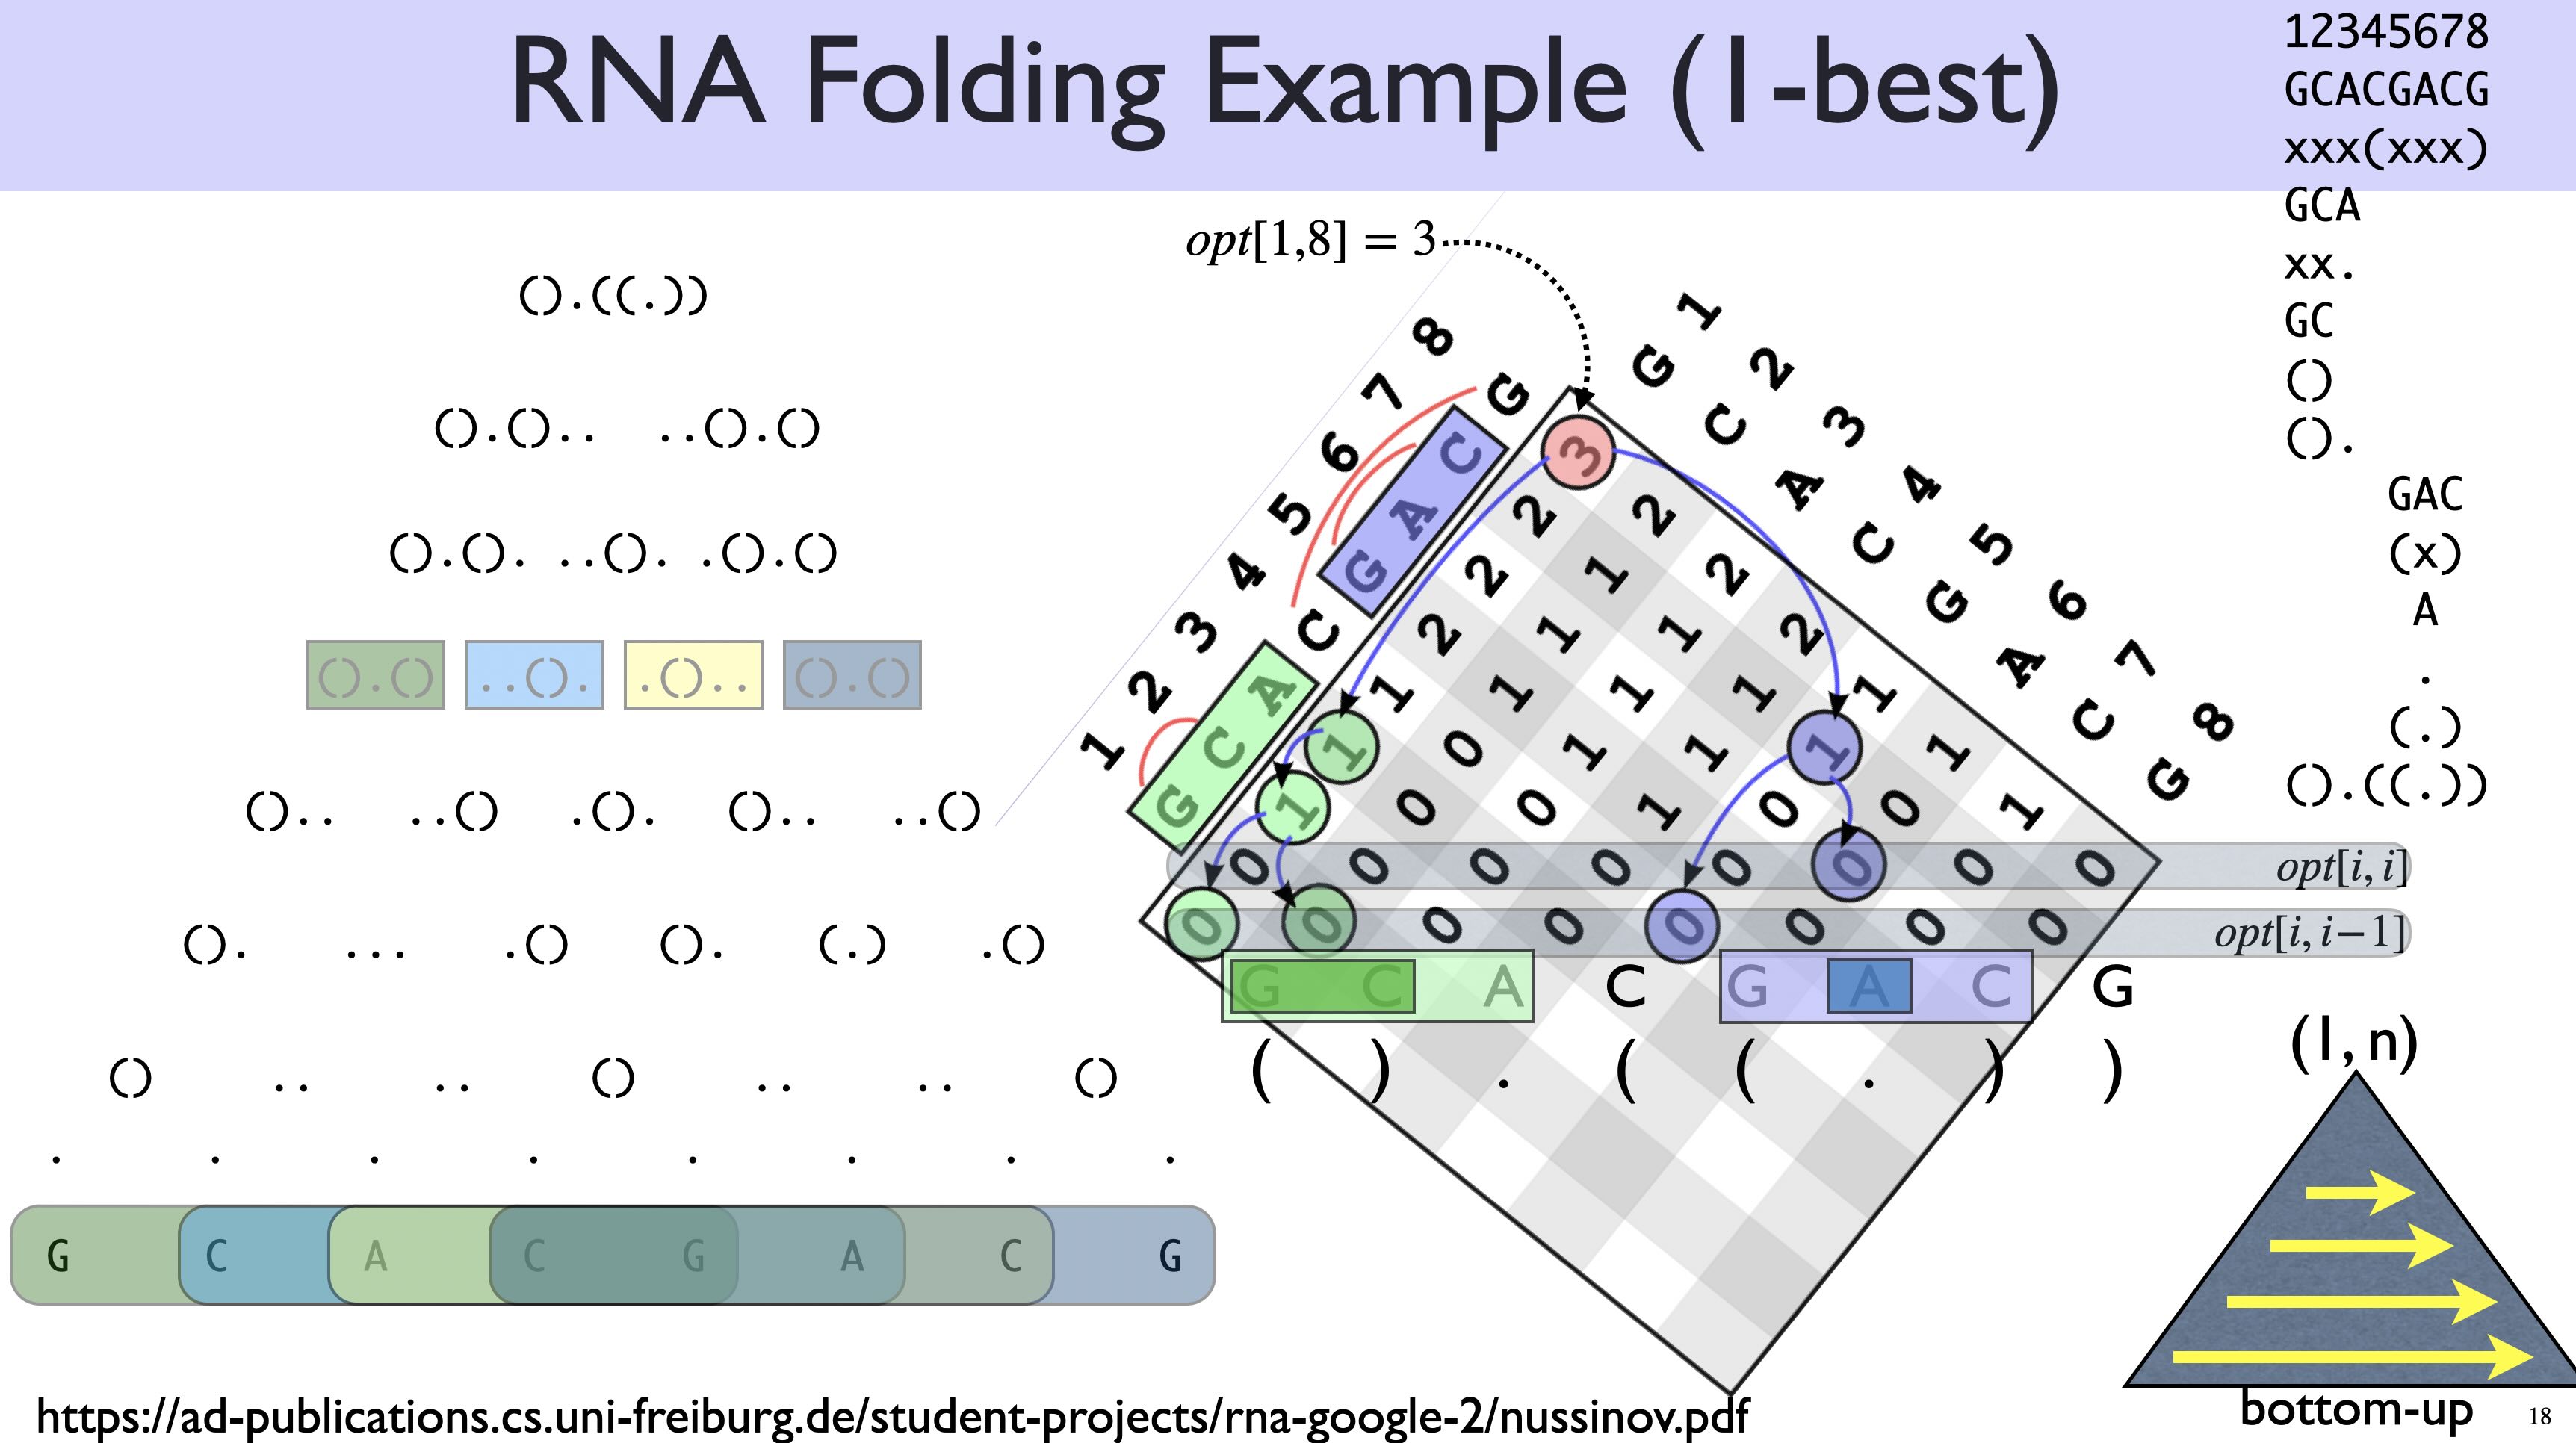 RNA folding as Nussinov